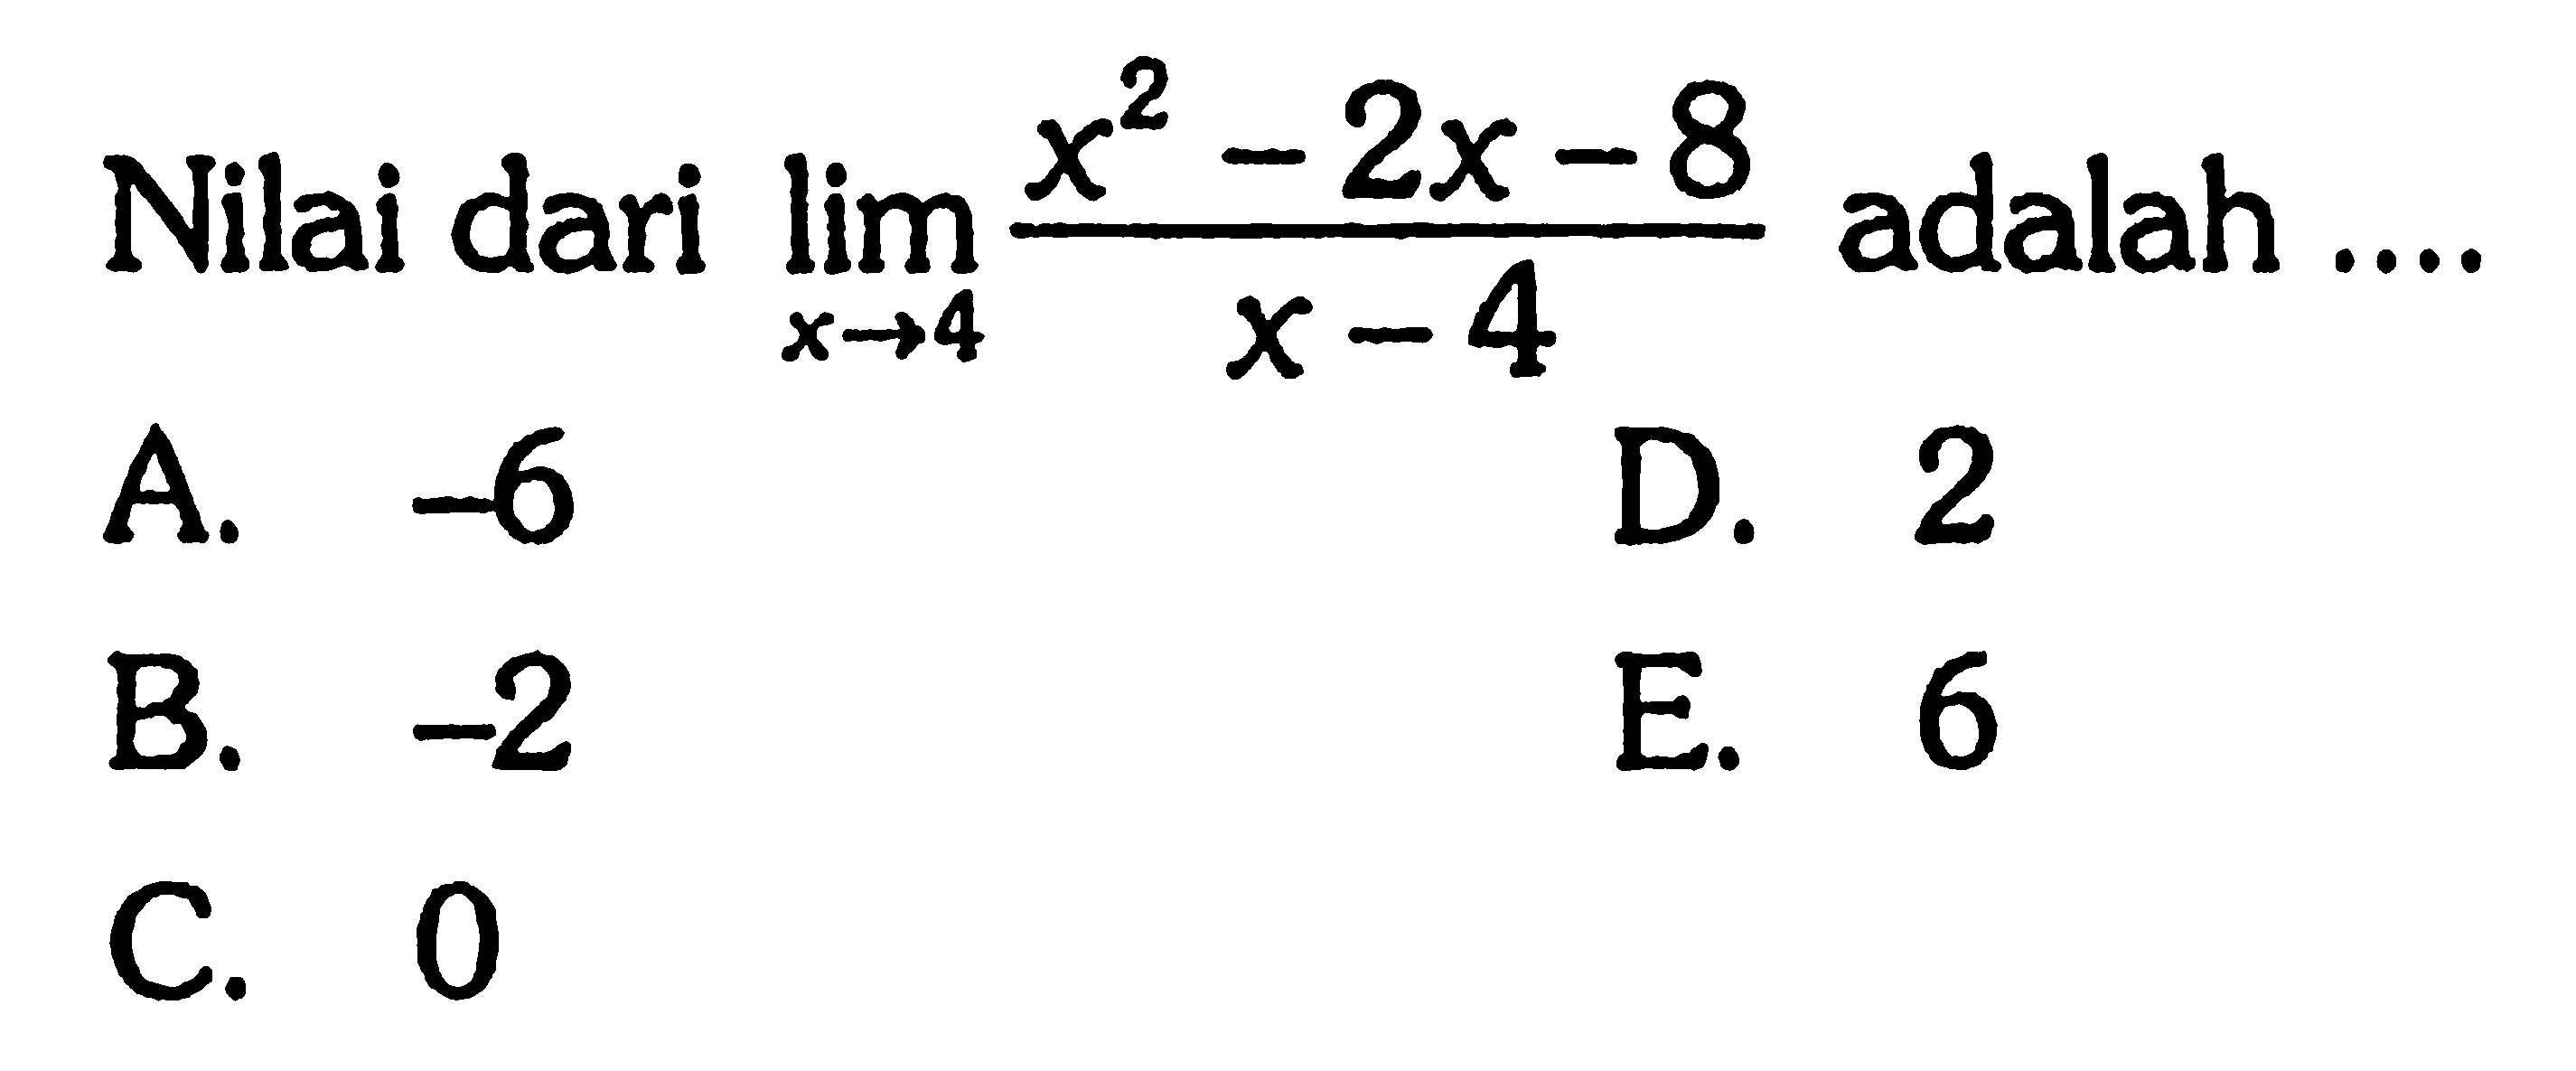 Nilai dari lim x->4 (x^2-2x-8)/(x-4) adalah 